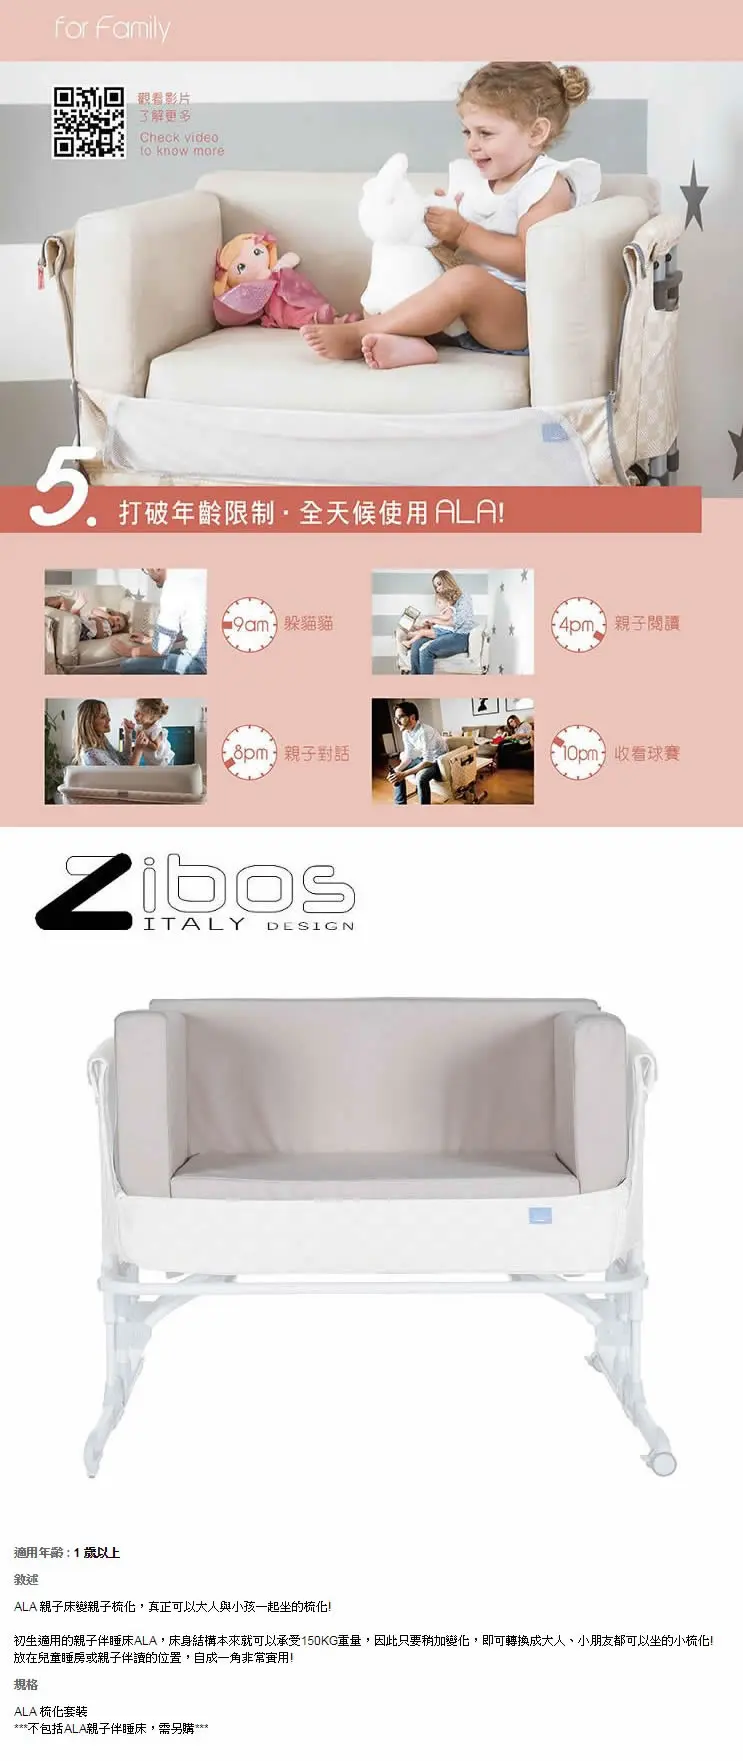 Zibos ALA 婴儿床专用梳化椅垫